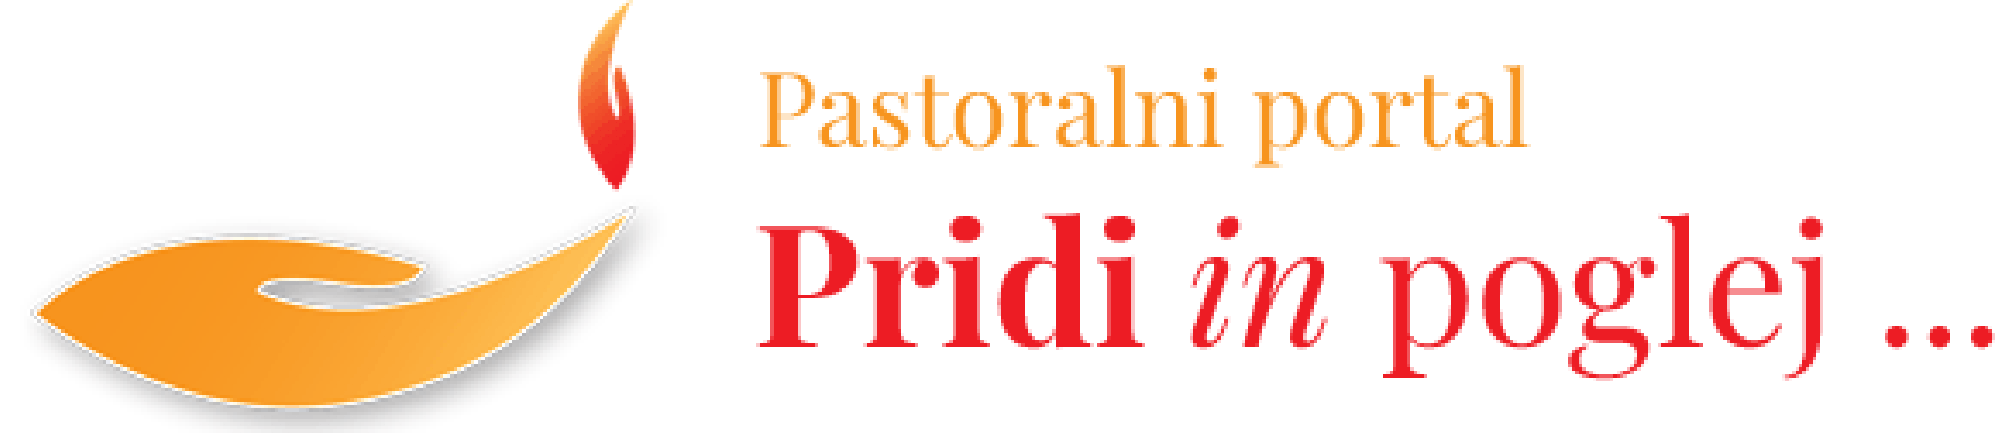 Pastoralni portal Pridi in poglej ... DRUŽINA